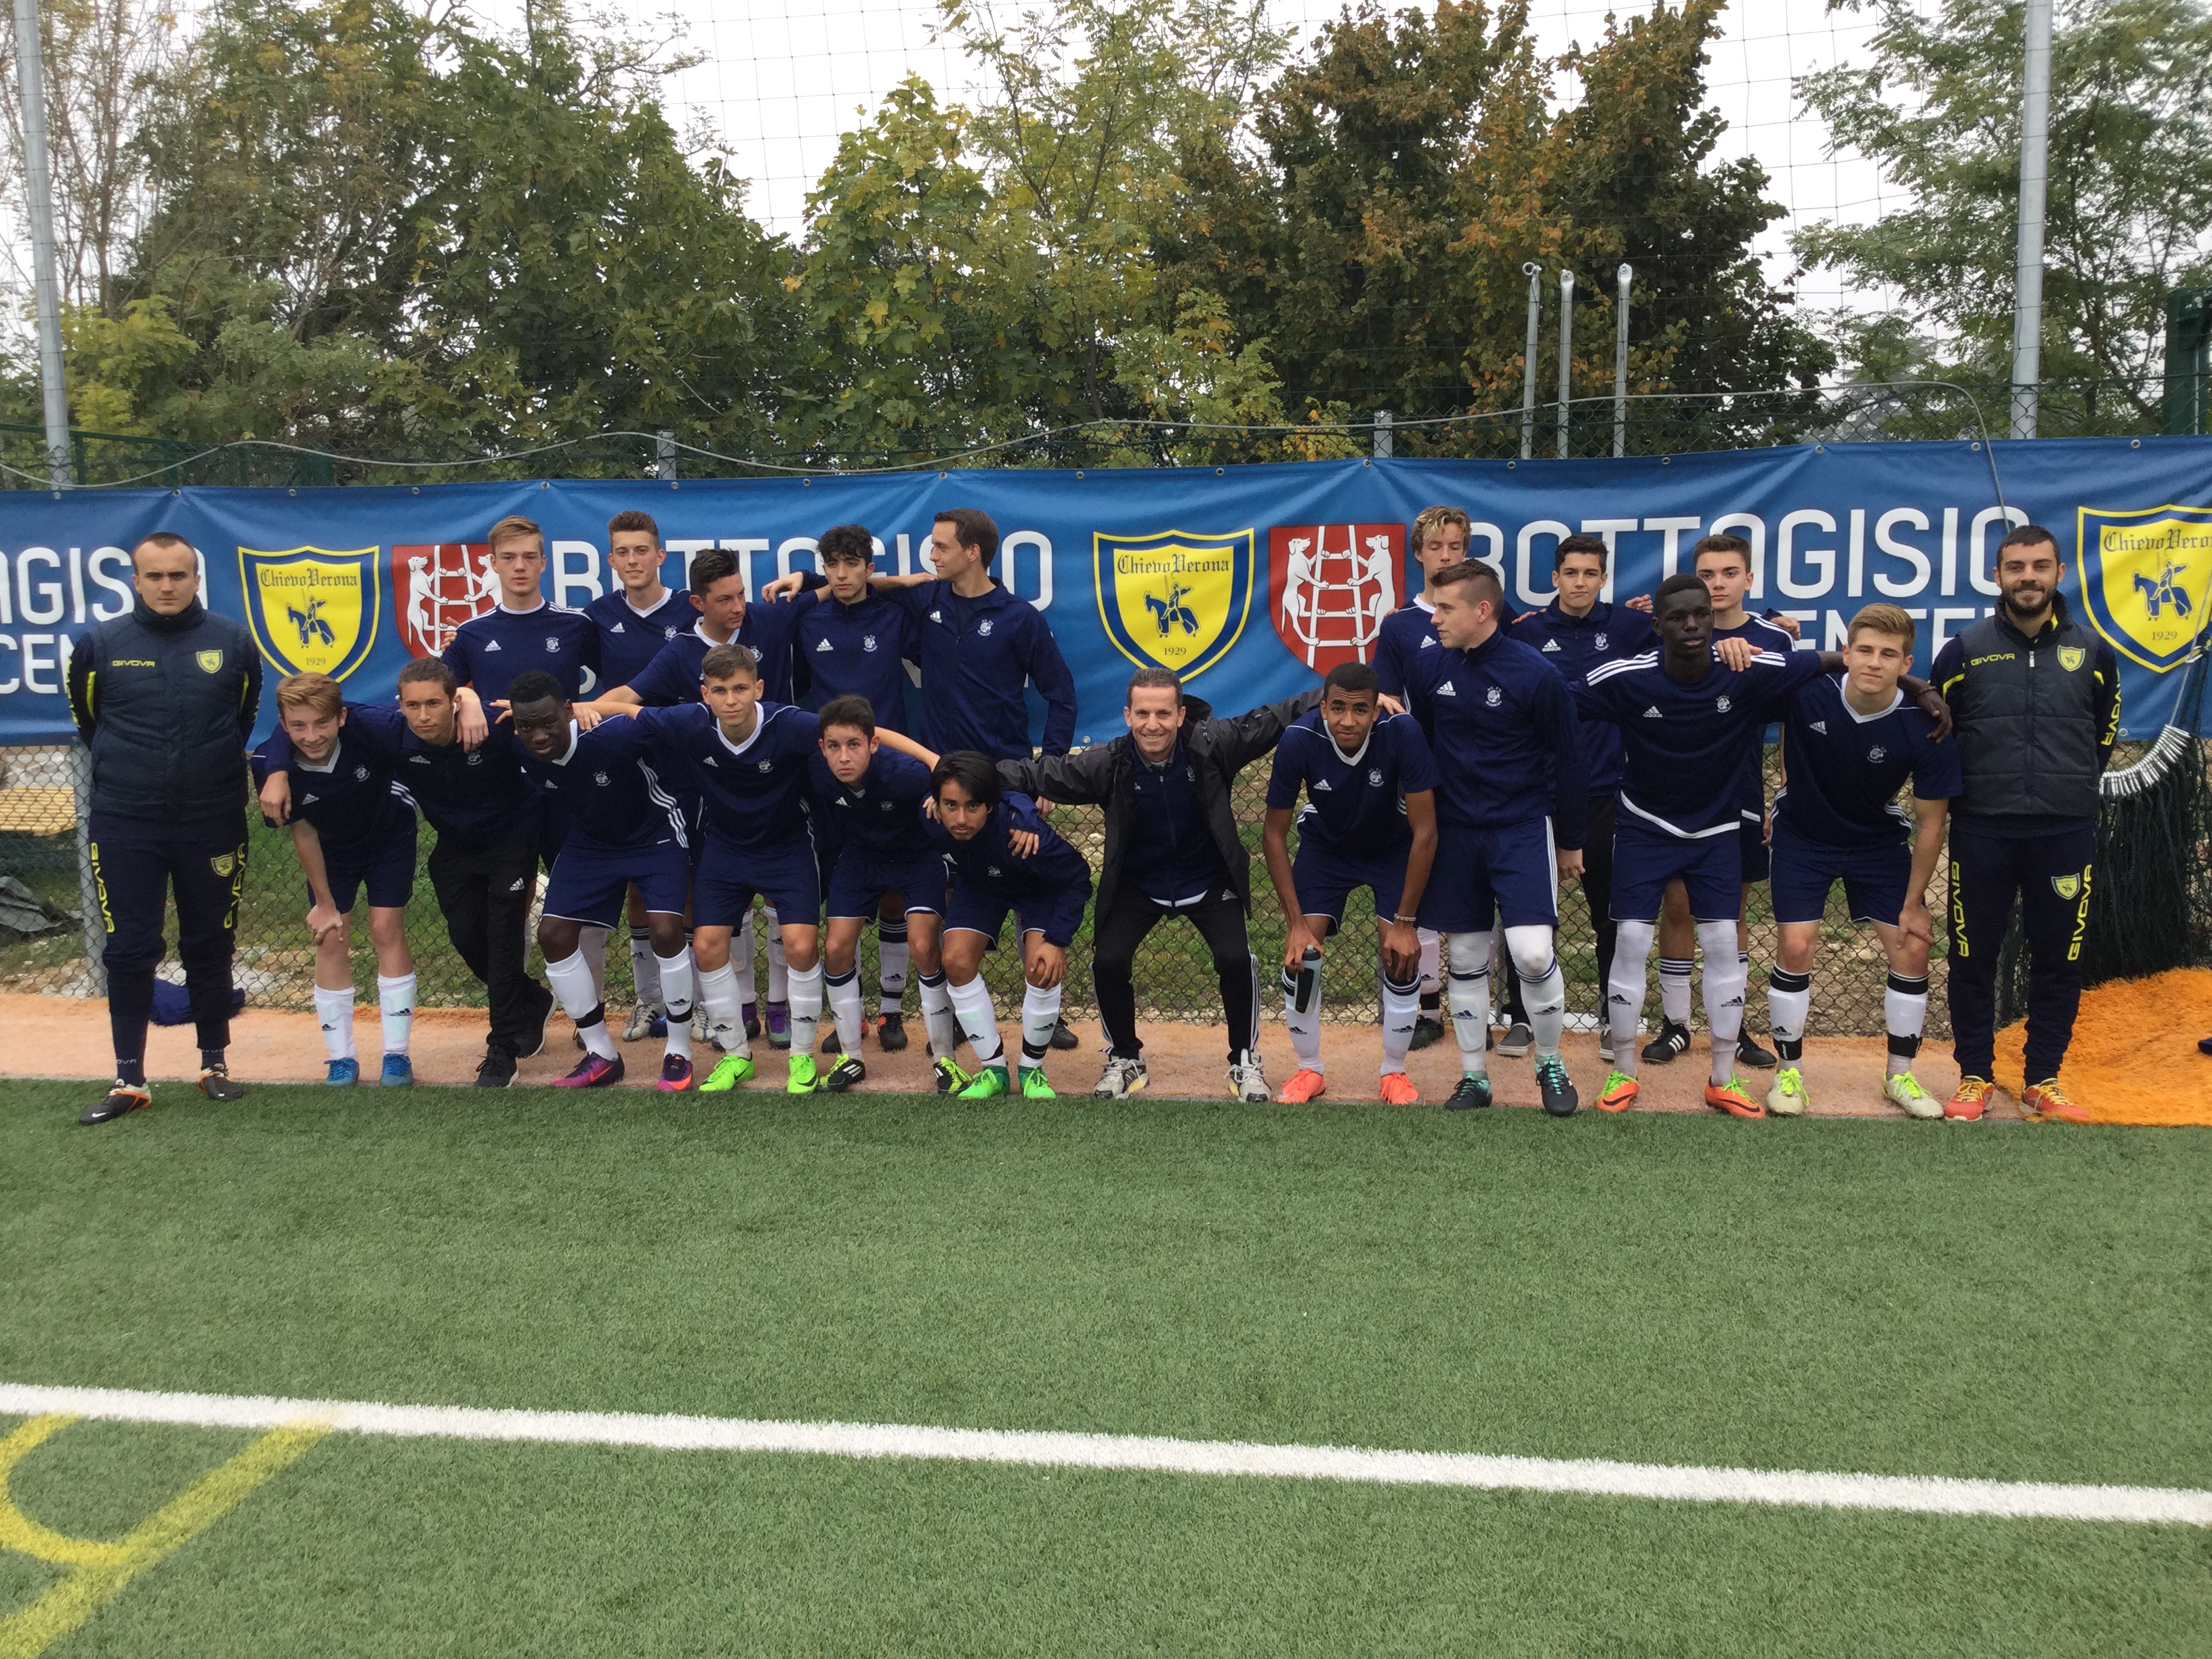 Chievo-training-ground-team-pic.JPG